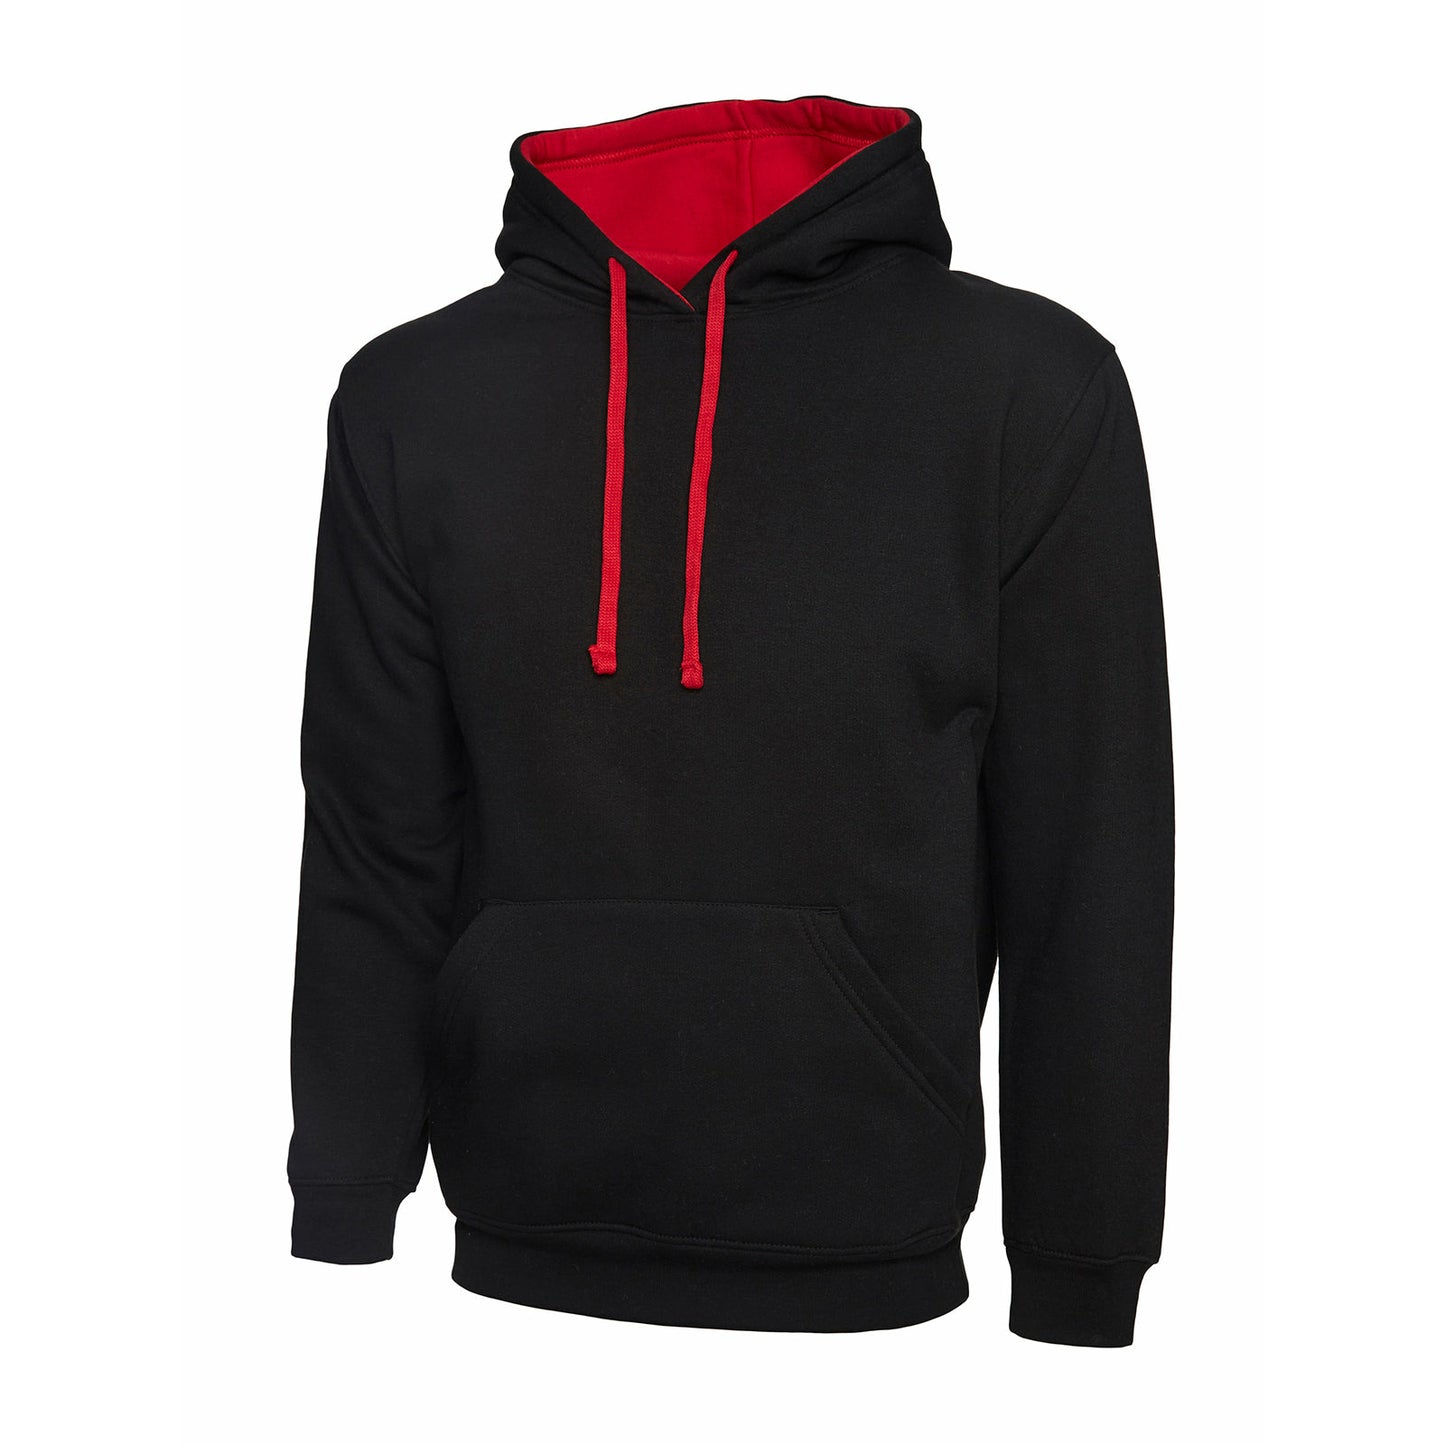 Contrast Hooded Sweatshirt Black/Red